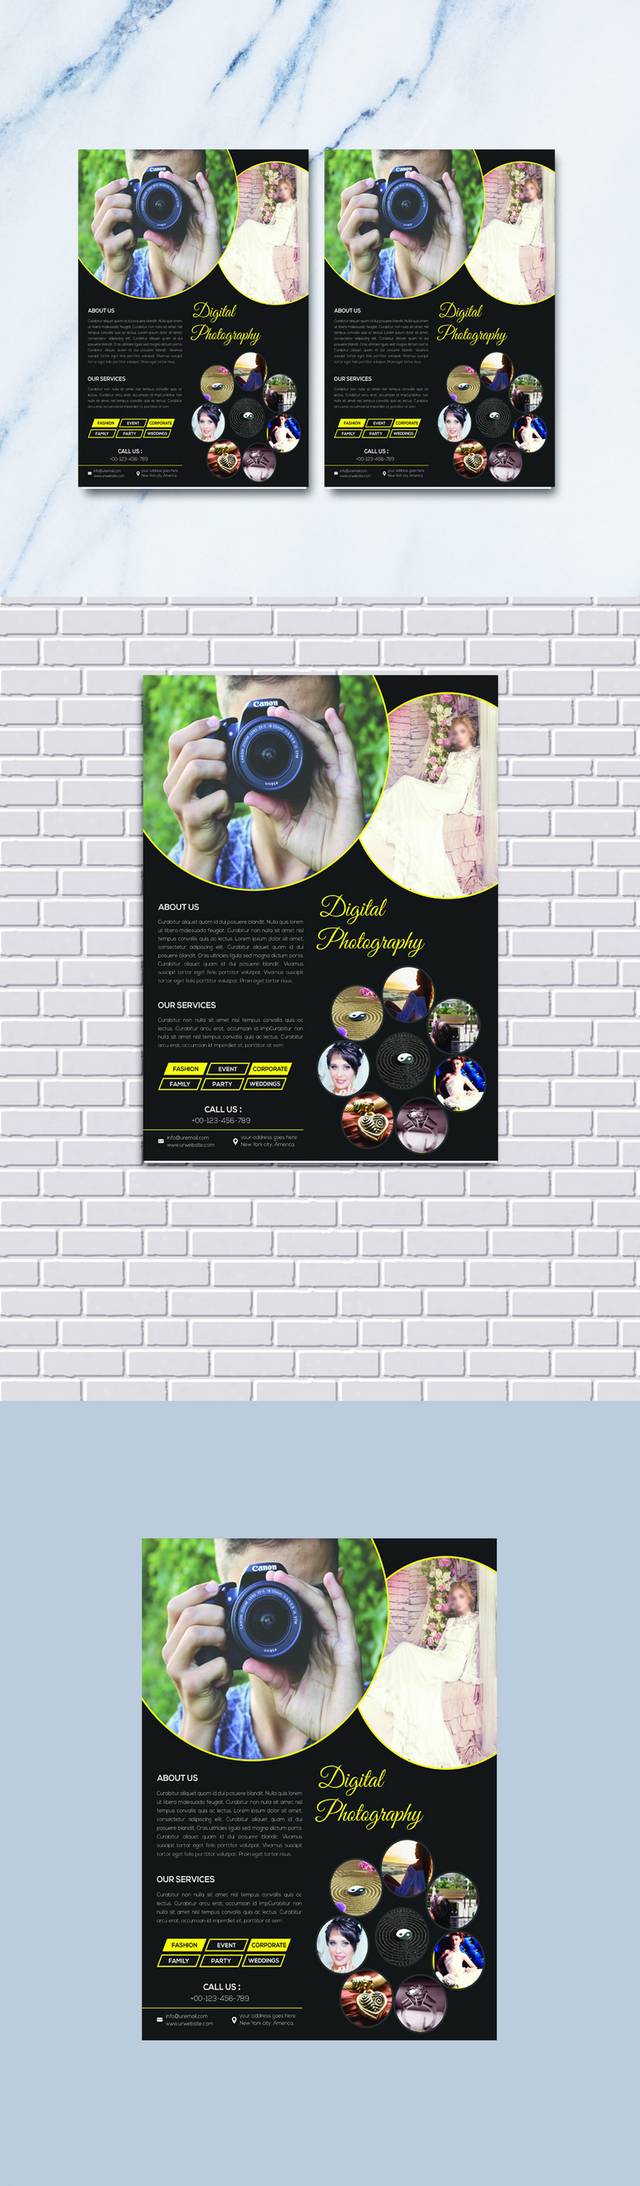 婚纱摄影营销传单设计PSD模板